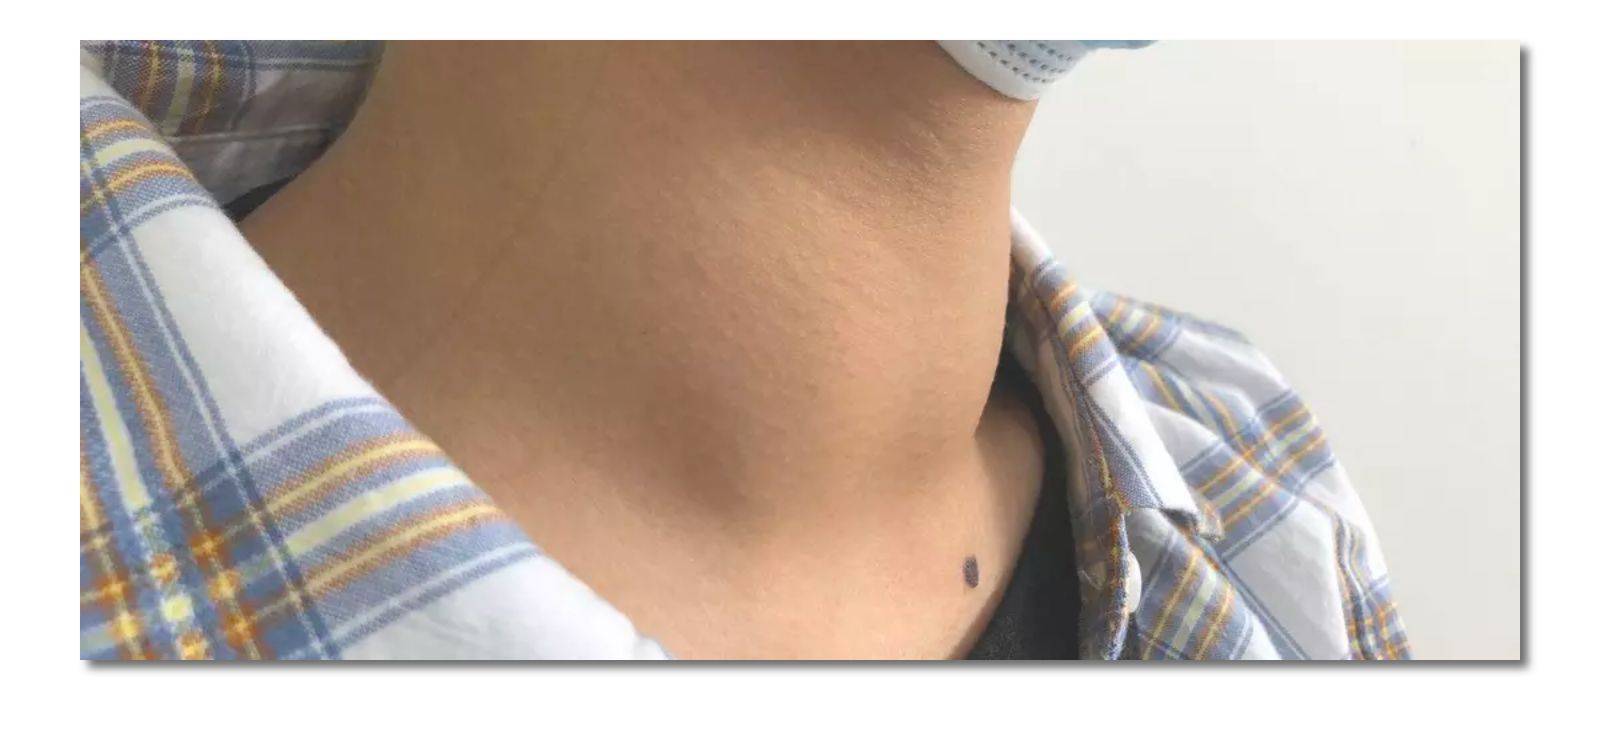 甲状腺结节脖子照片图片